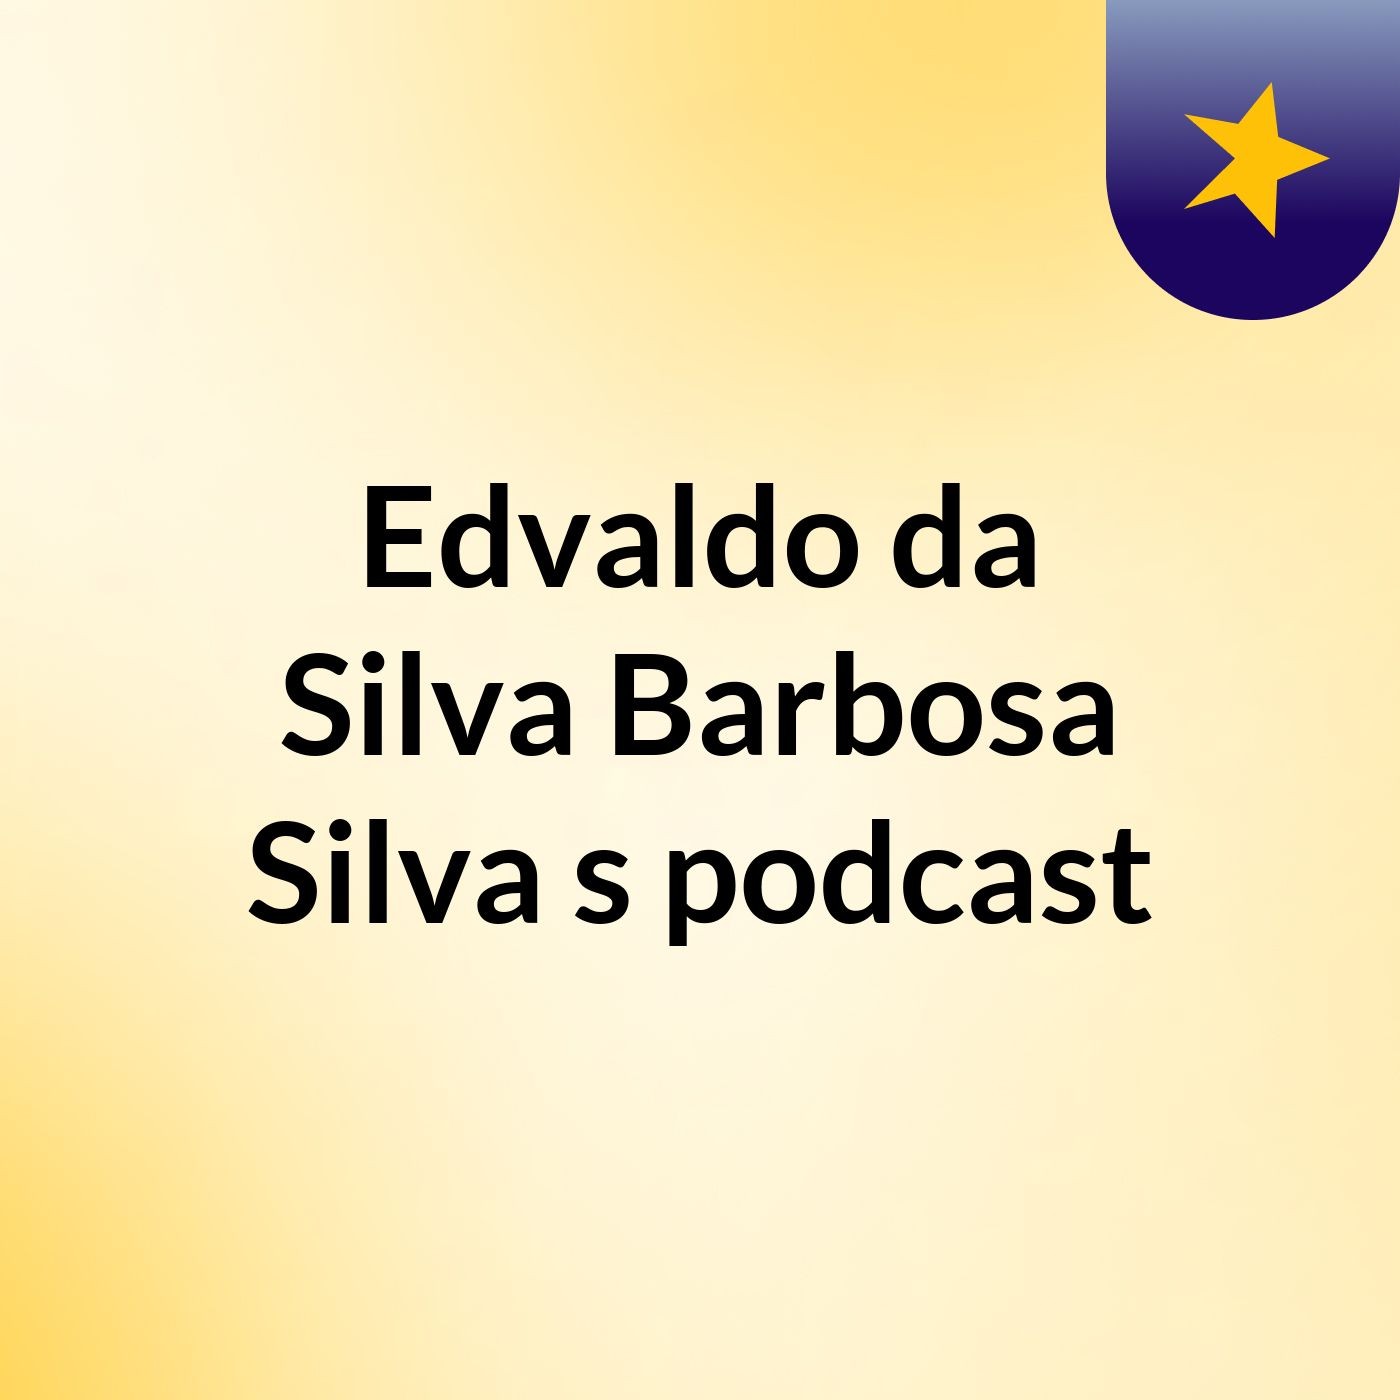 Edvaldo da Silva Barbosa Silva's podcast